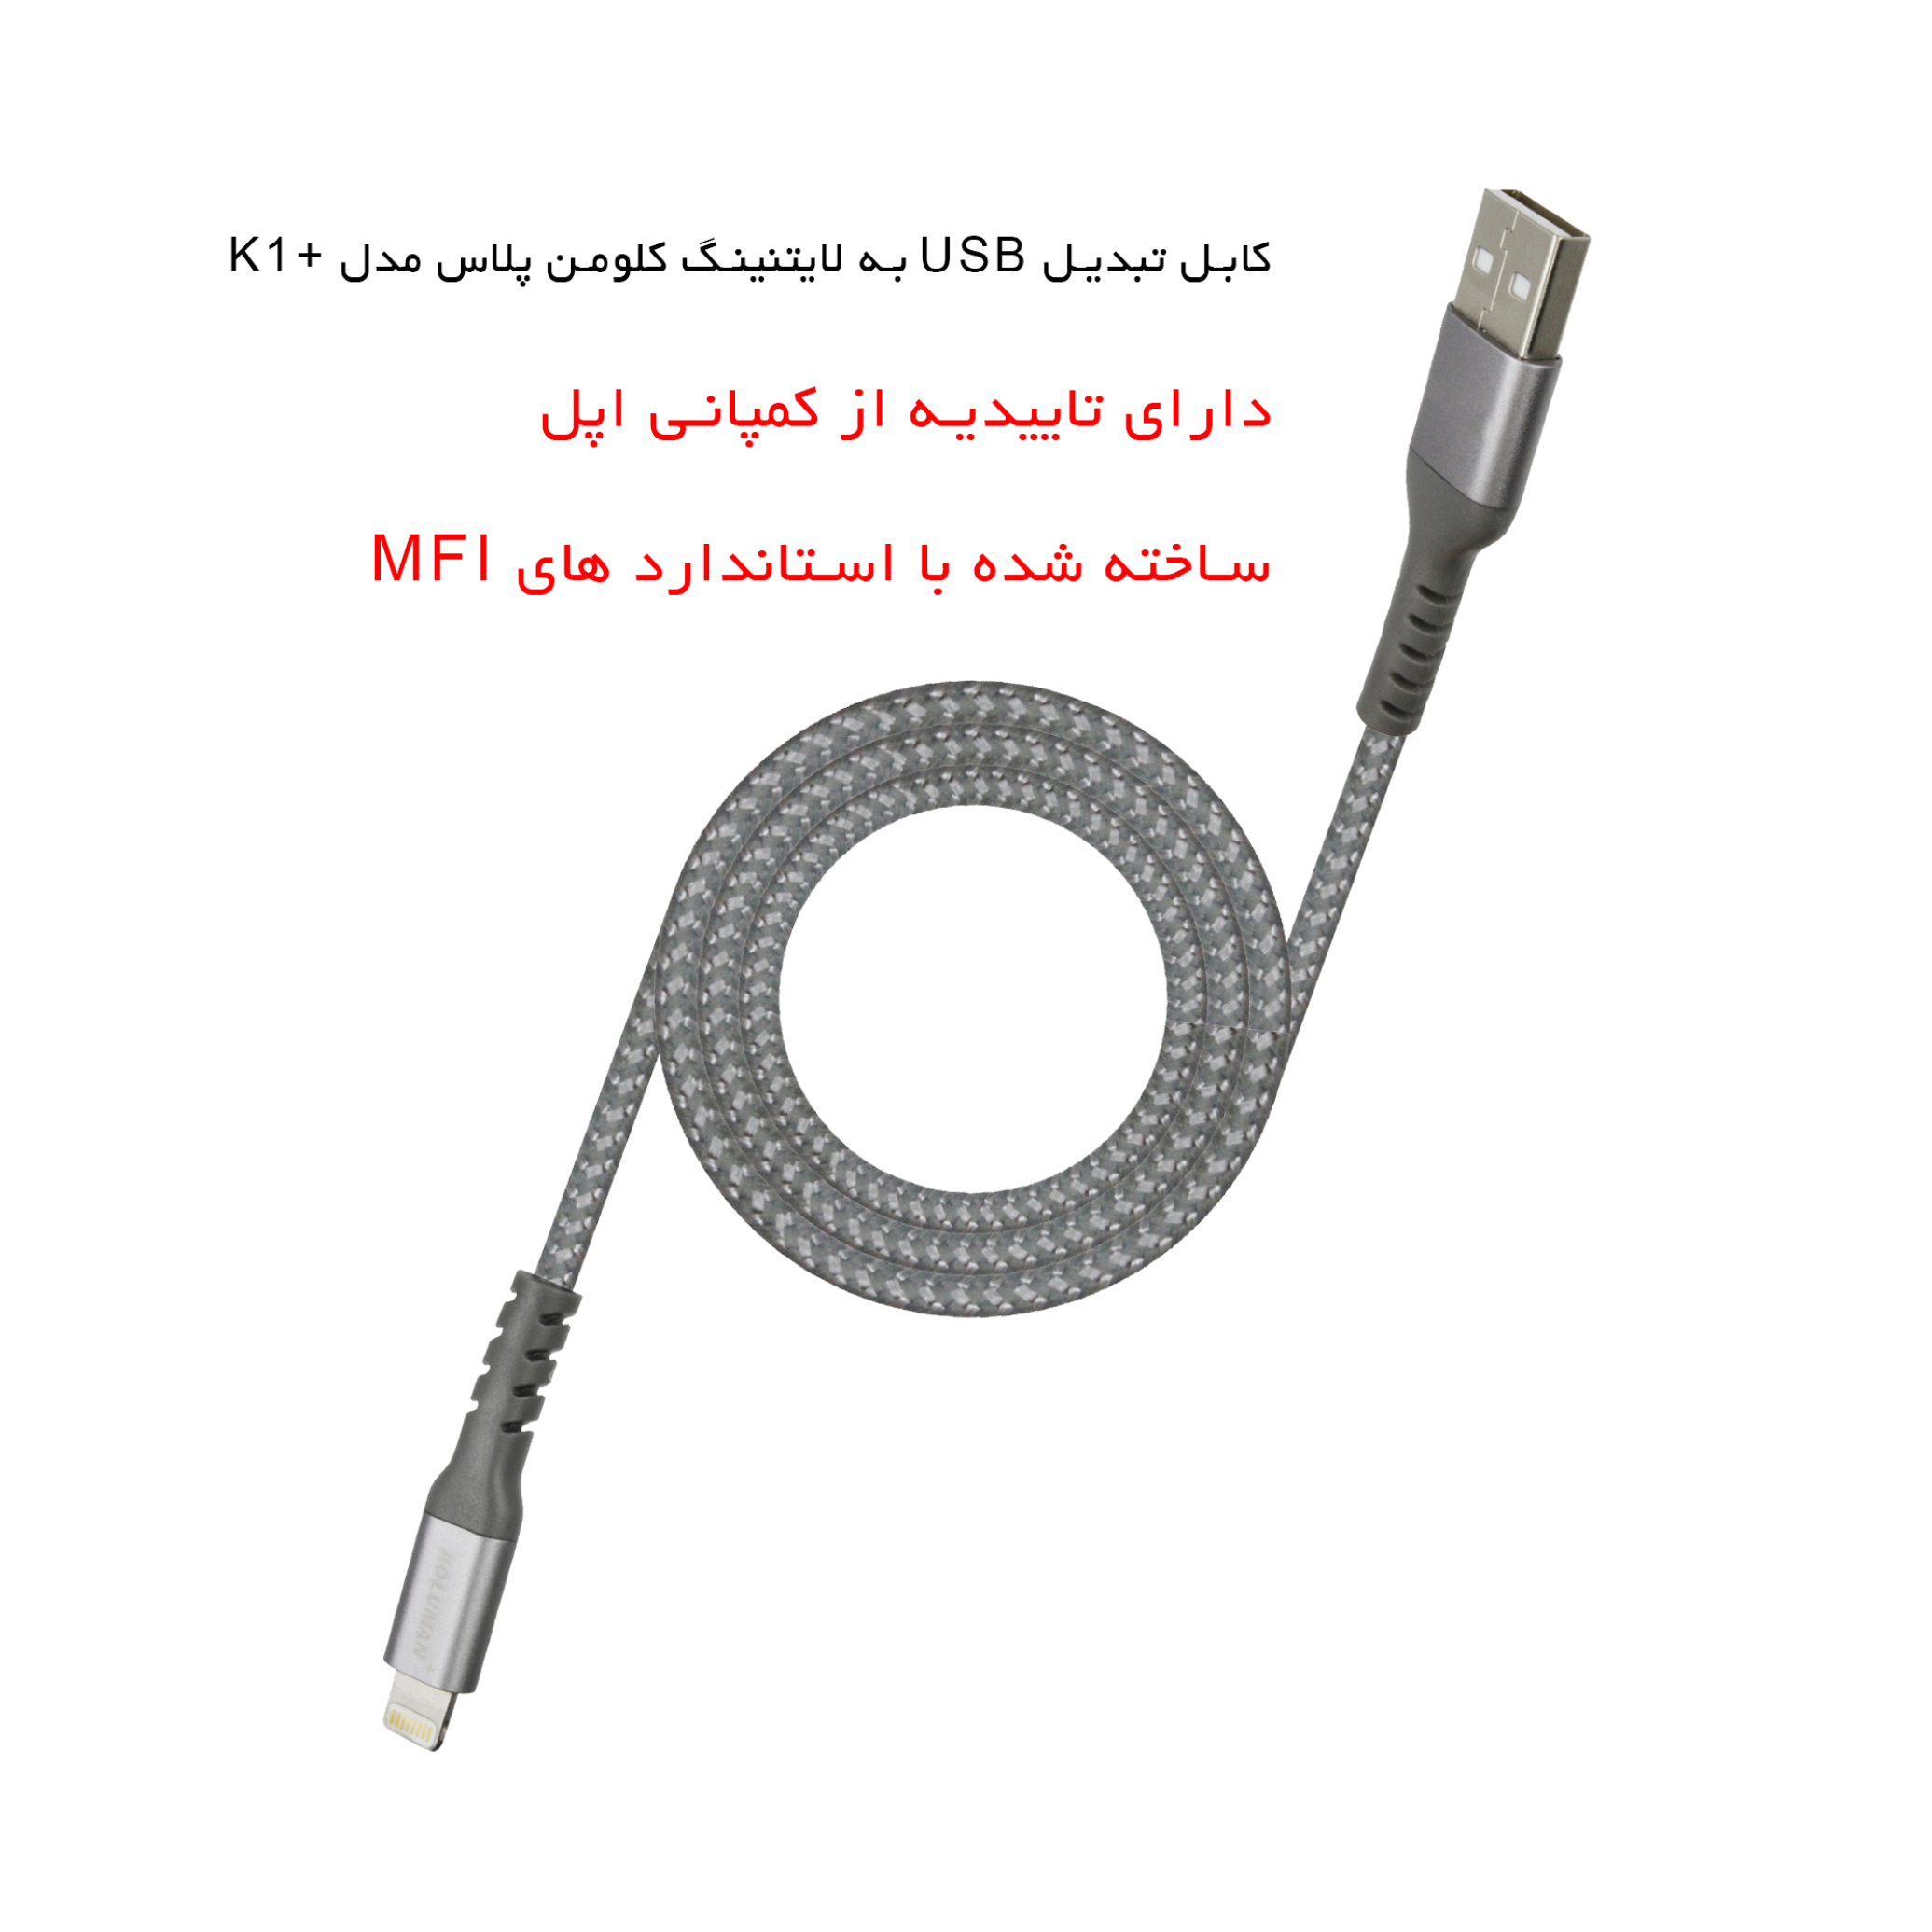 کابل تبدیل USB به لایتنینگ کلومن پلاس مدل +K1 طول 1 متر به همراه ...